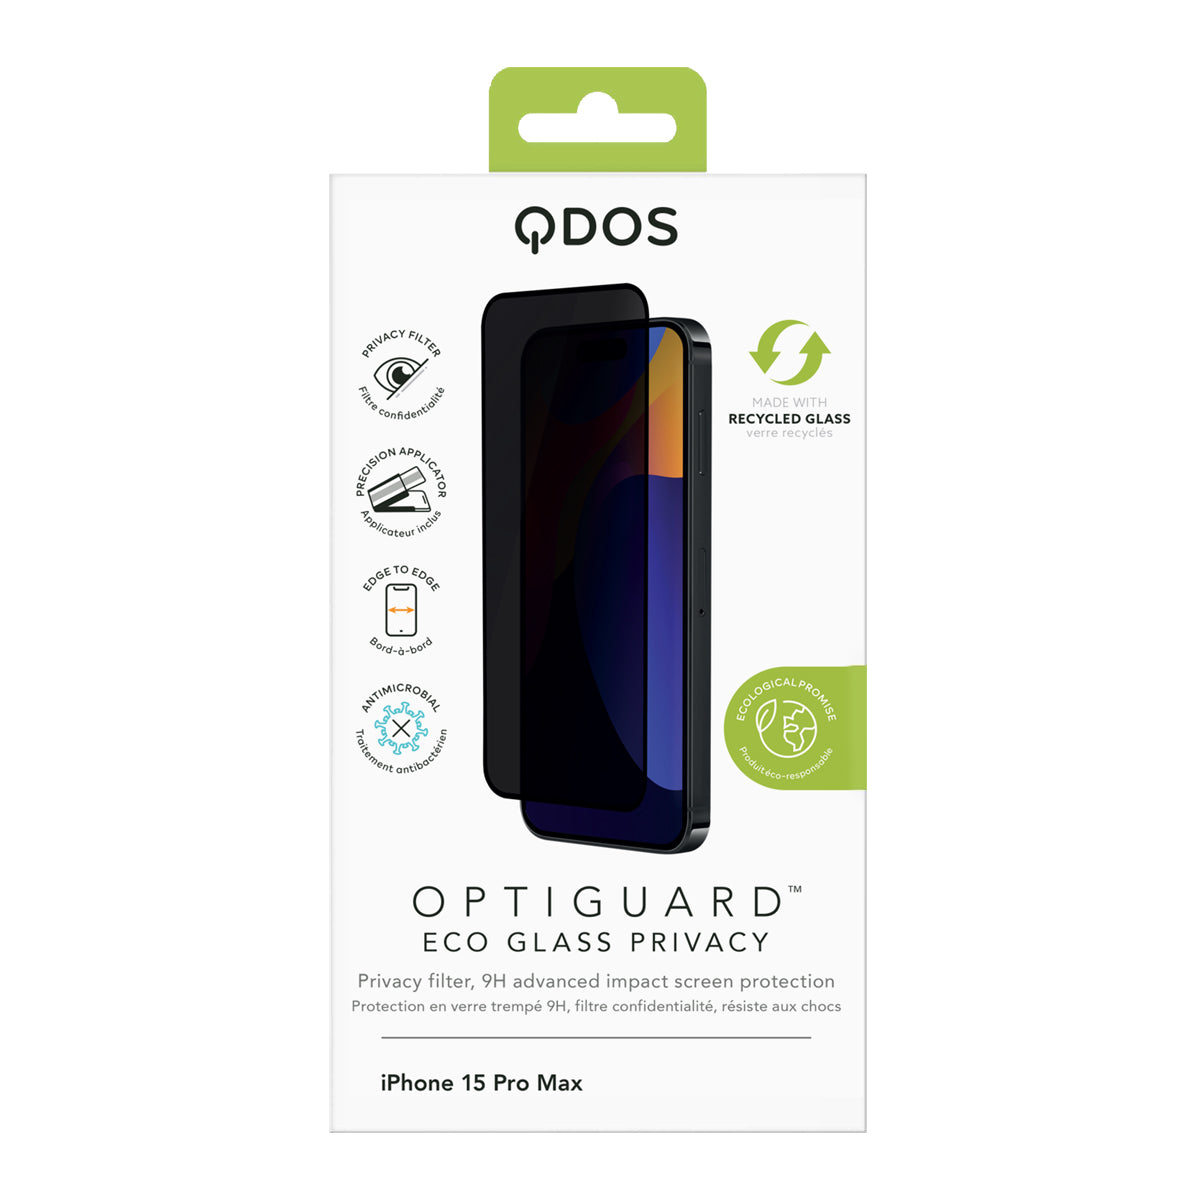 OptiGuard Eco Glass Privacy for iPhone 15 Pro Max - Privacy Black